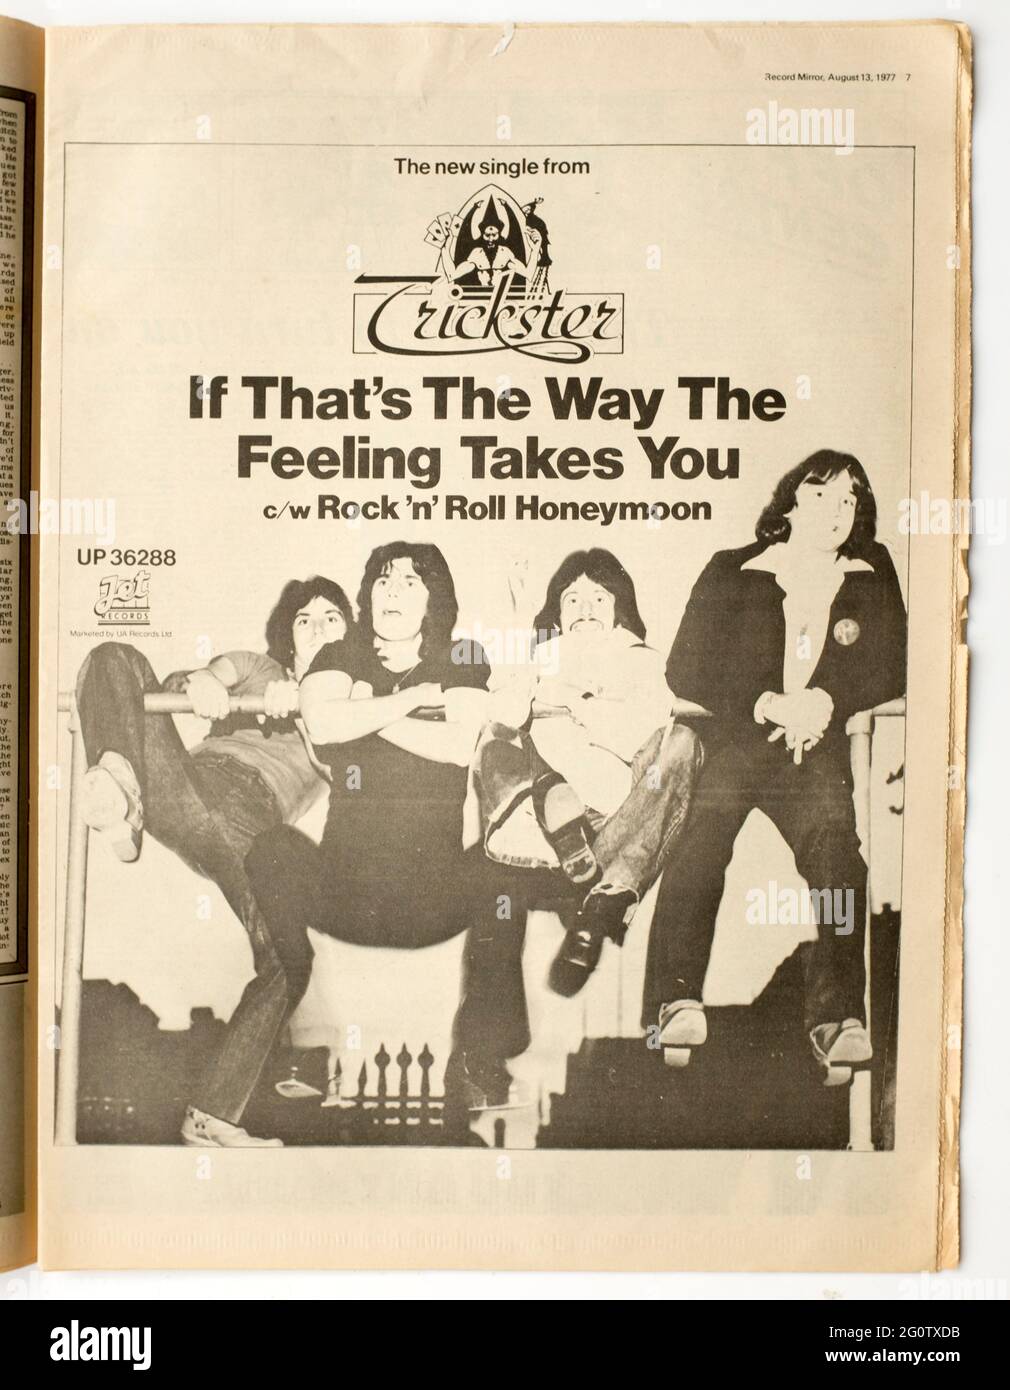 Publicité pour Trickster Group dans le magazine Record Mirror des années 1970 Banque D'Images